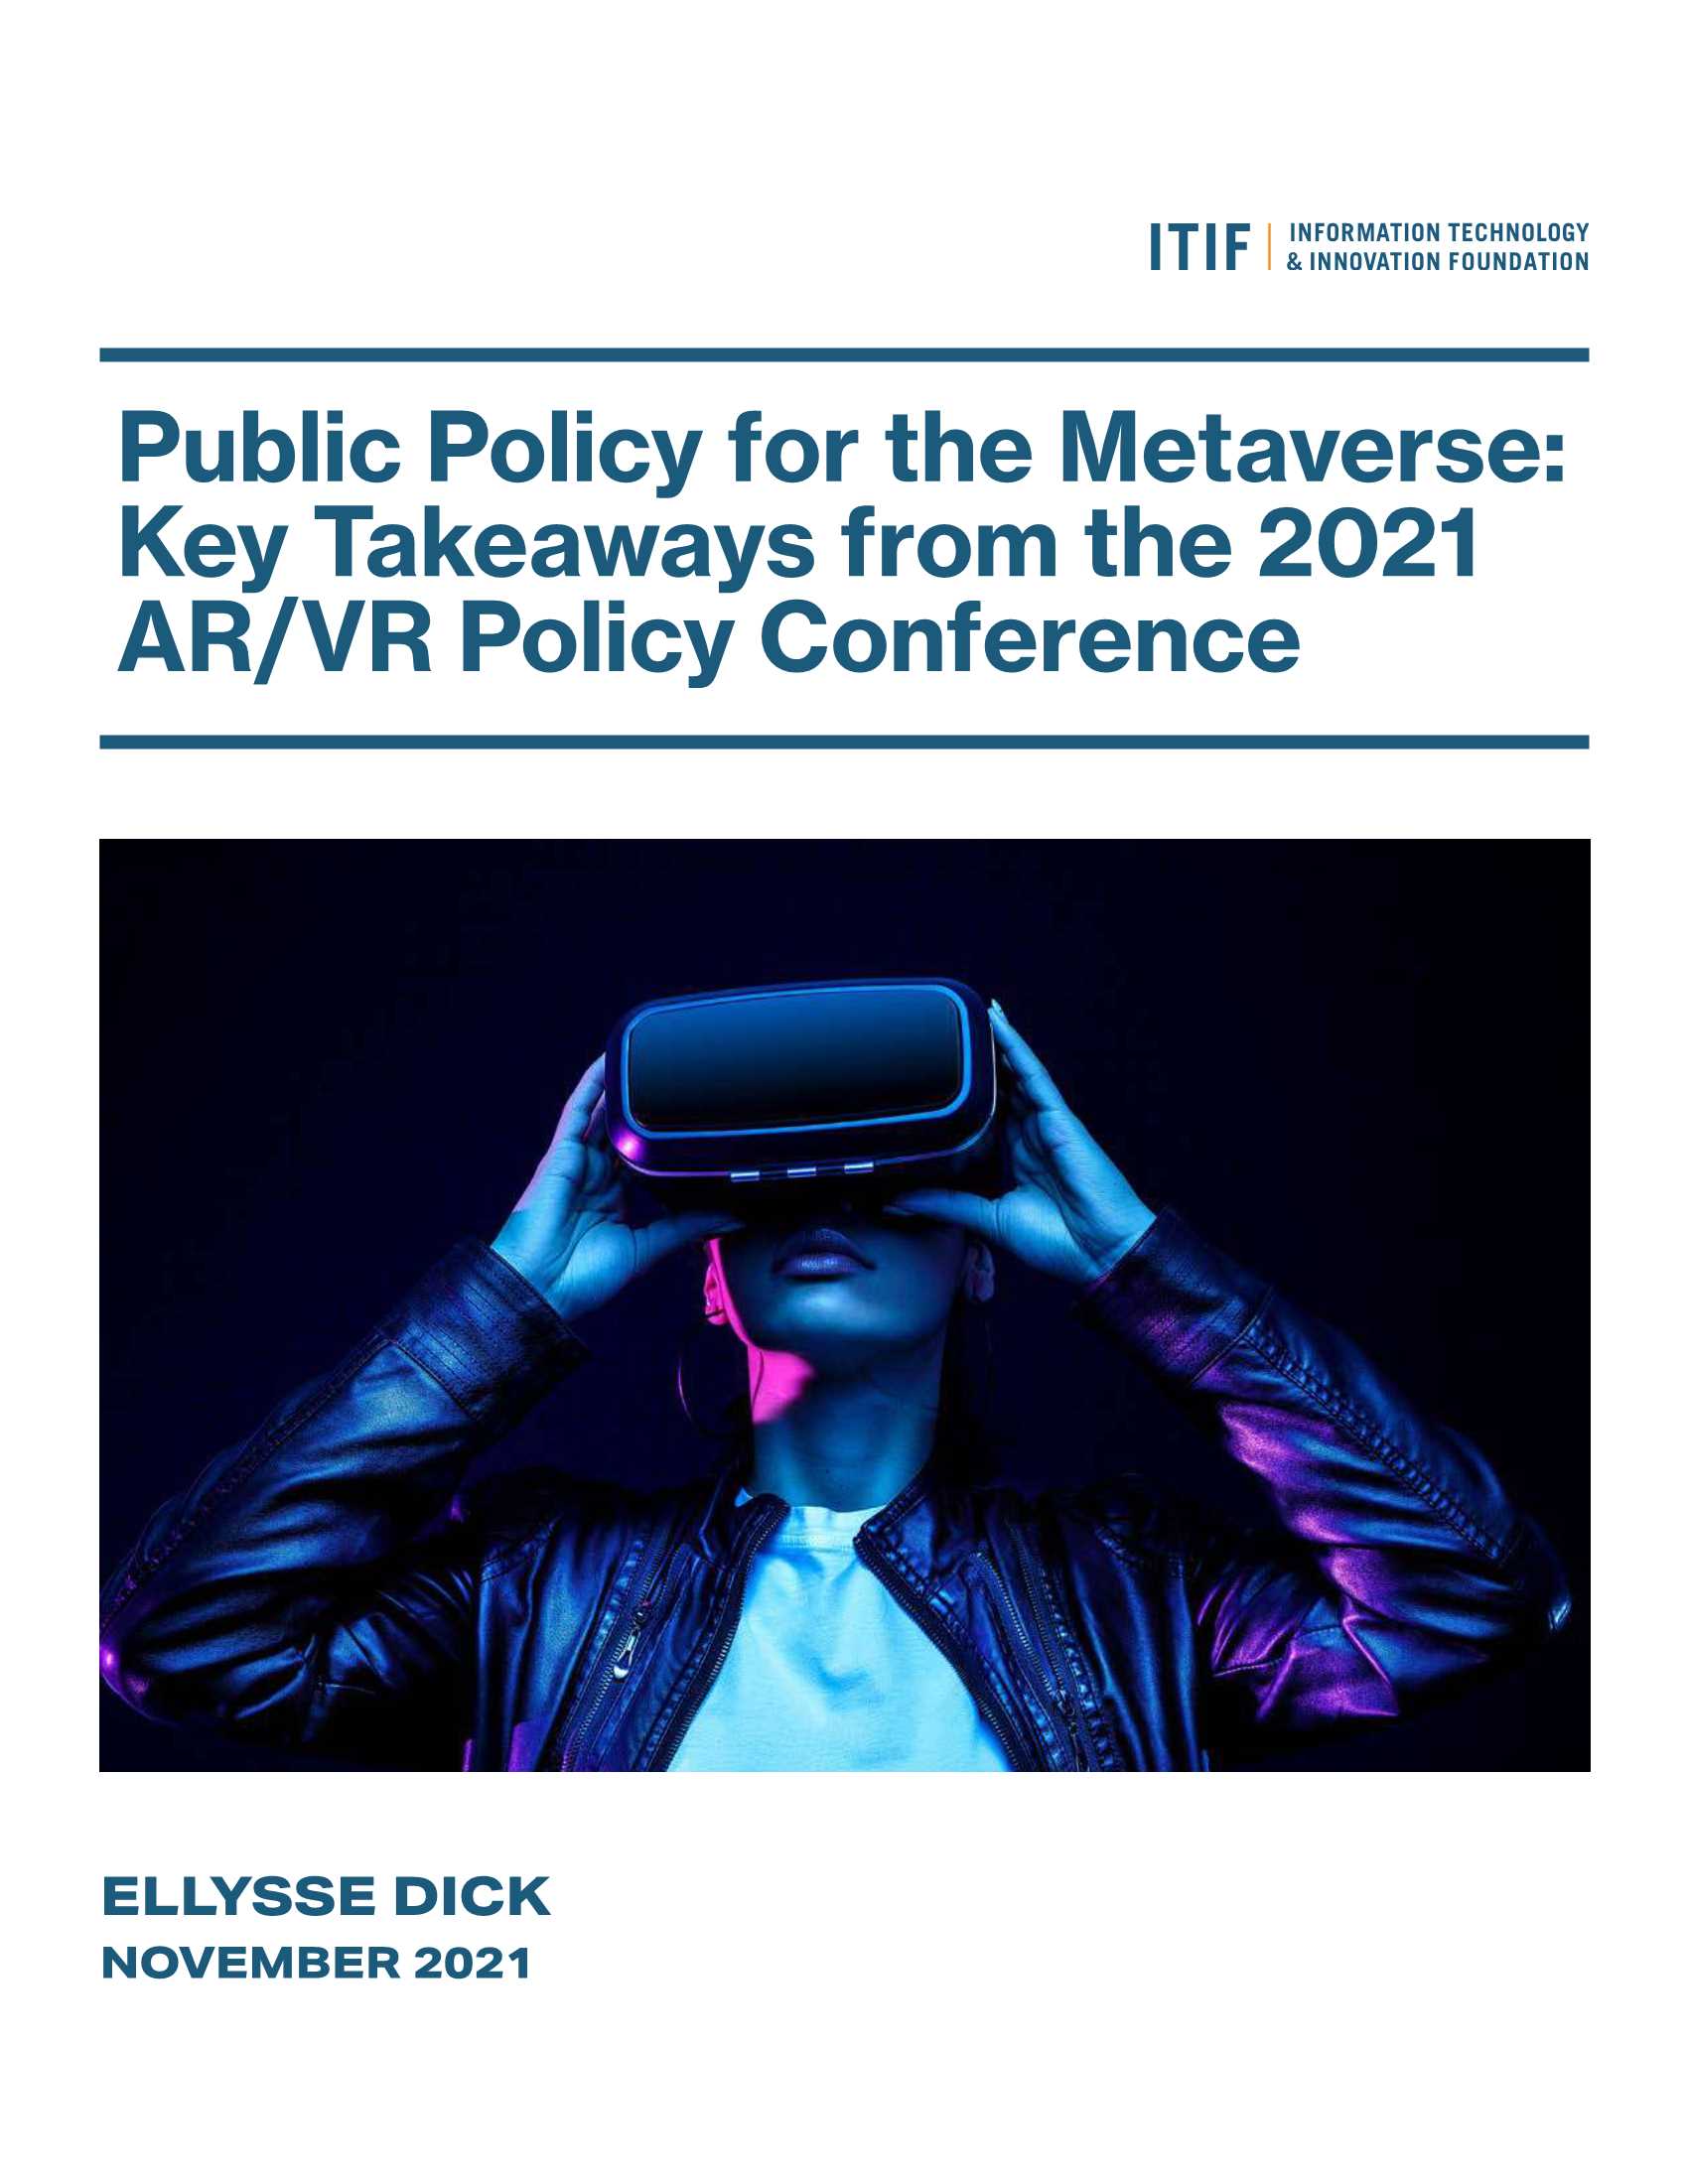 美国智库-元宇宙的公共政策：2021年AR VR政策会议的关键要点-2021.11-21页